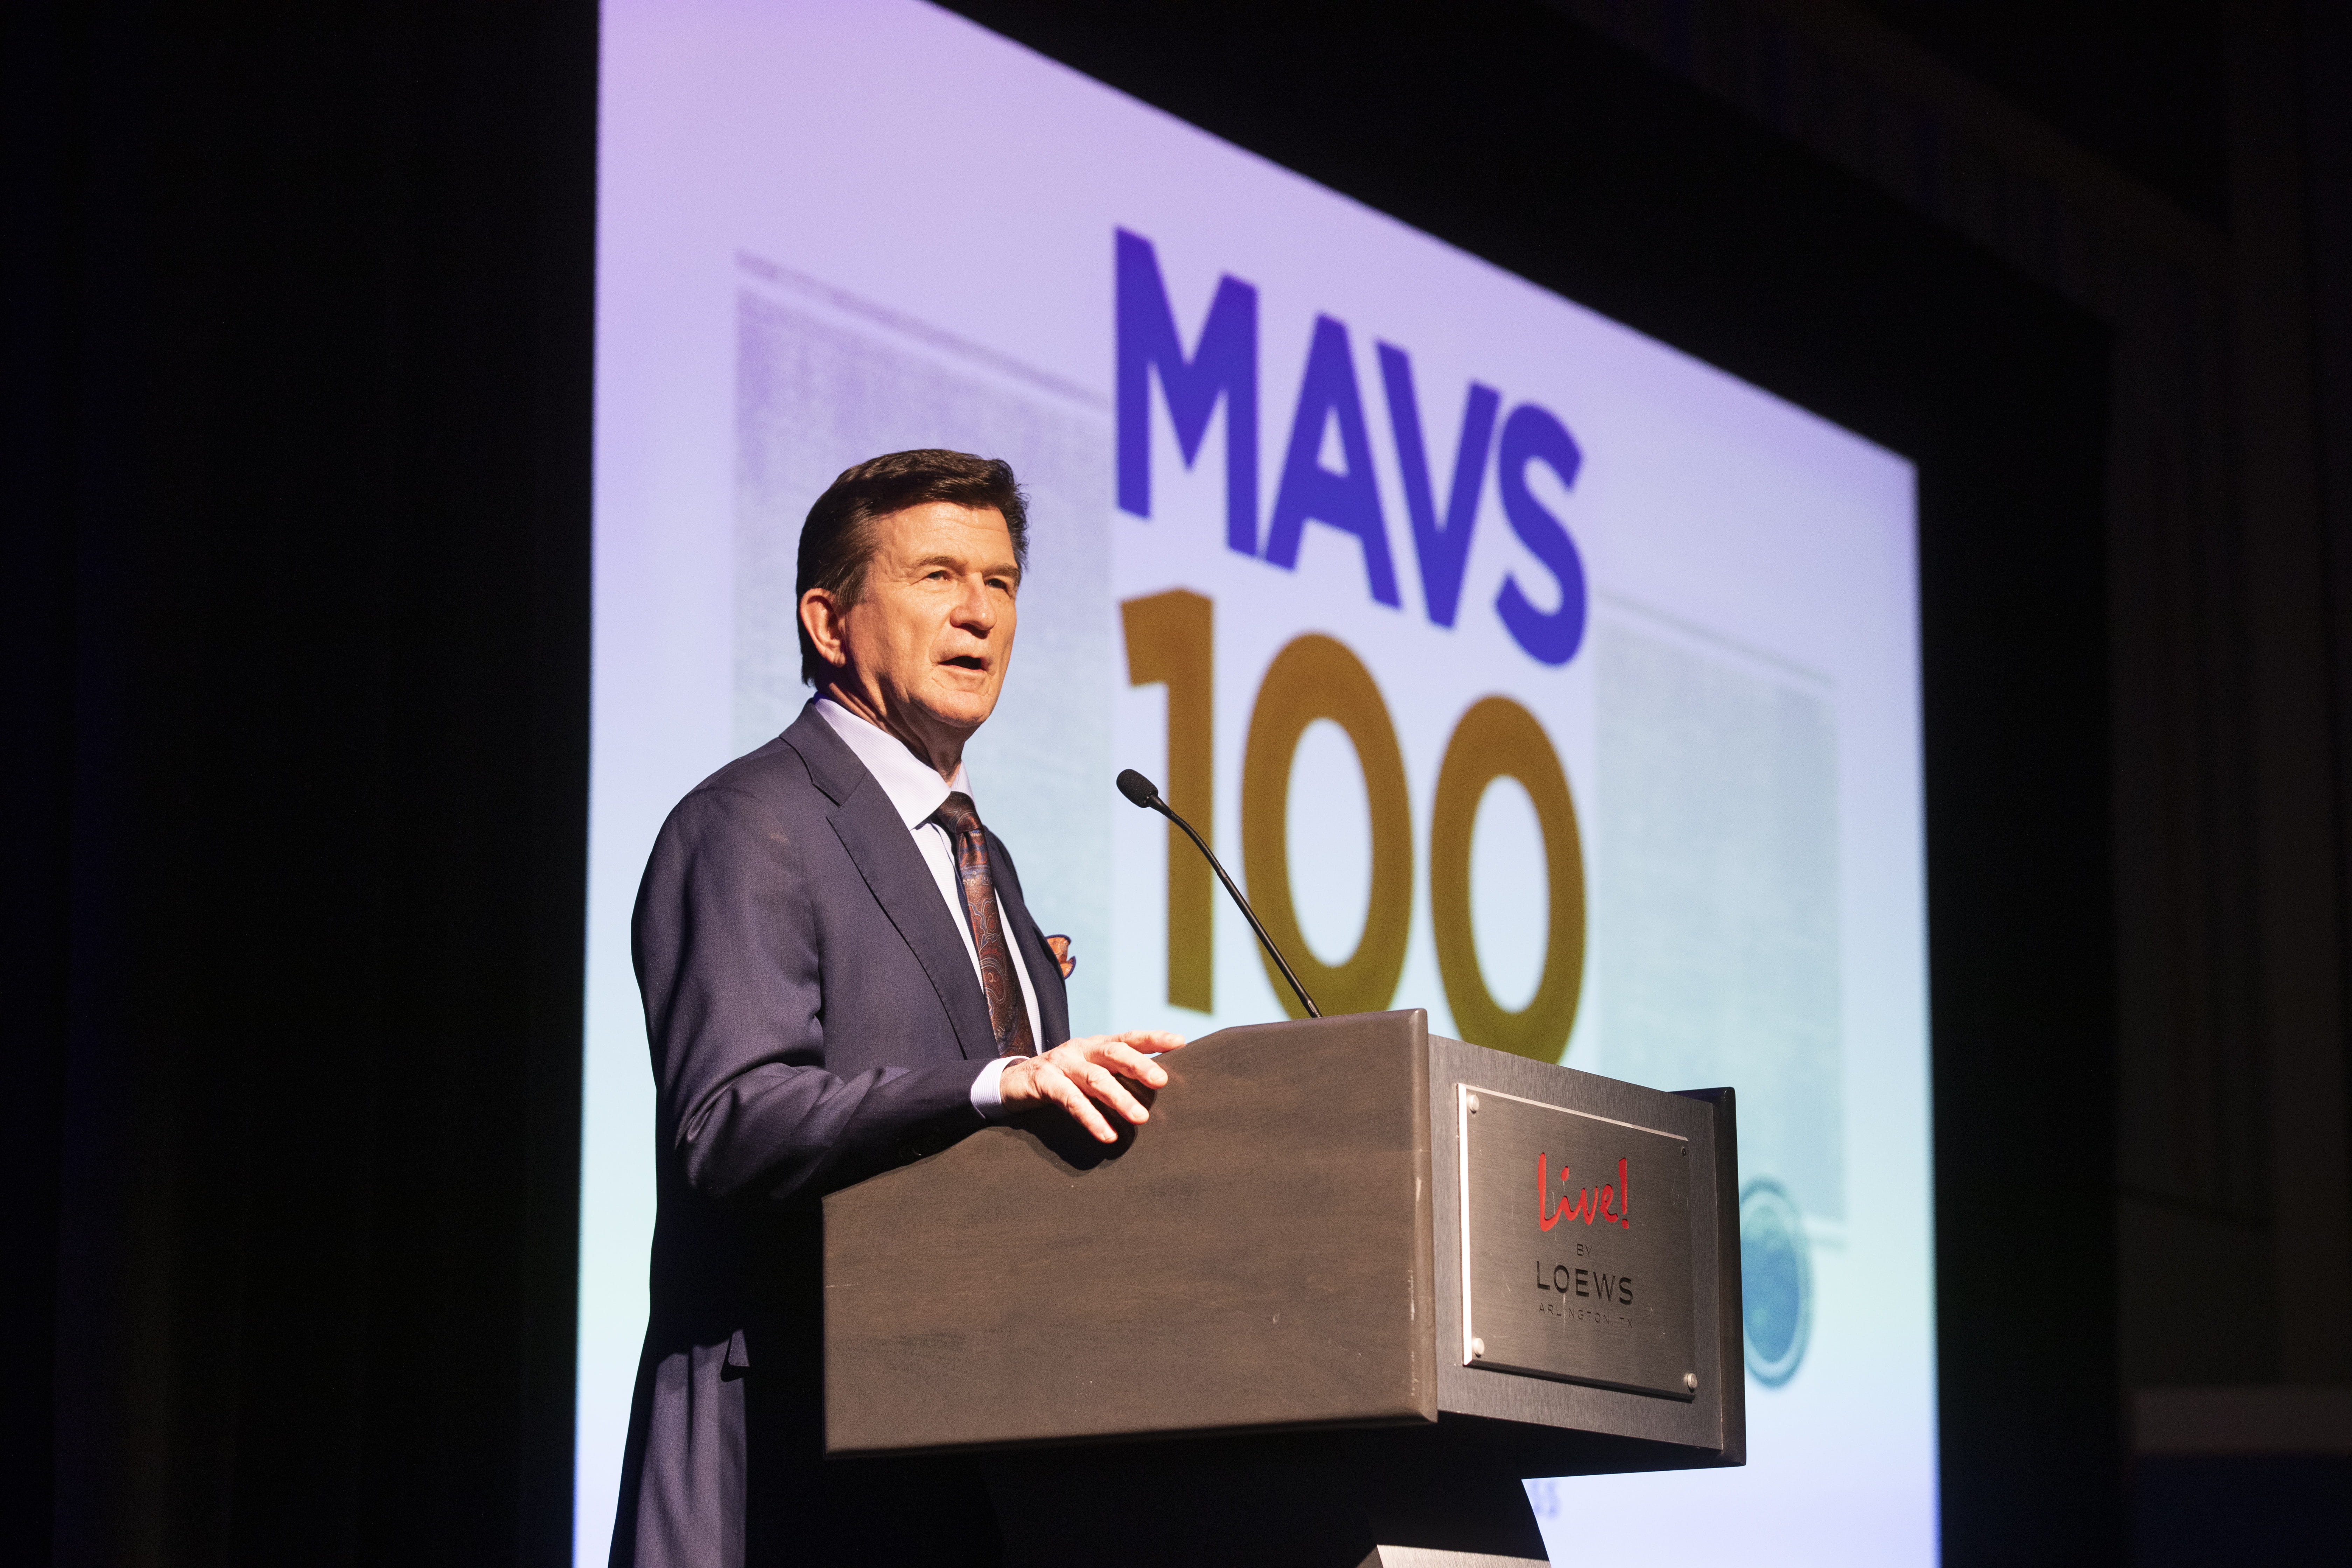 Harry Dombroski at MAVS 100